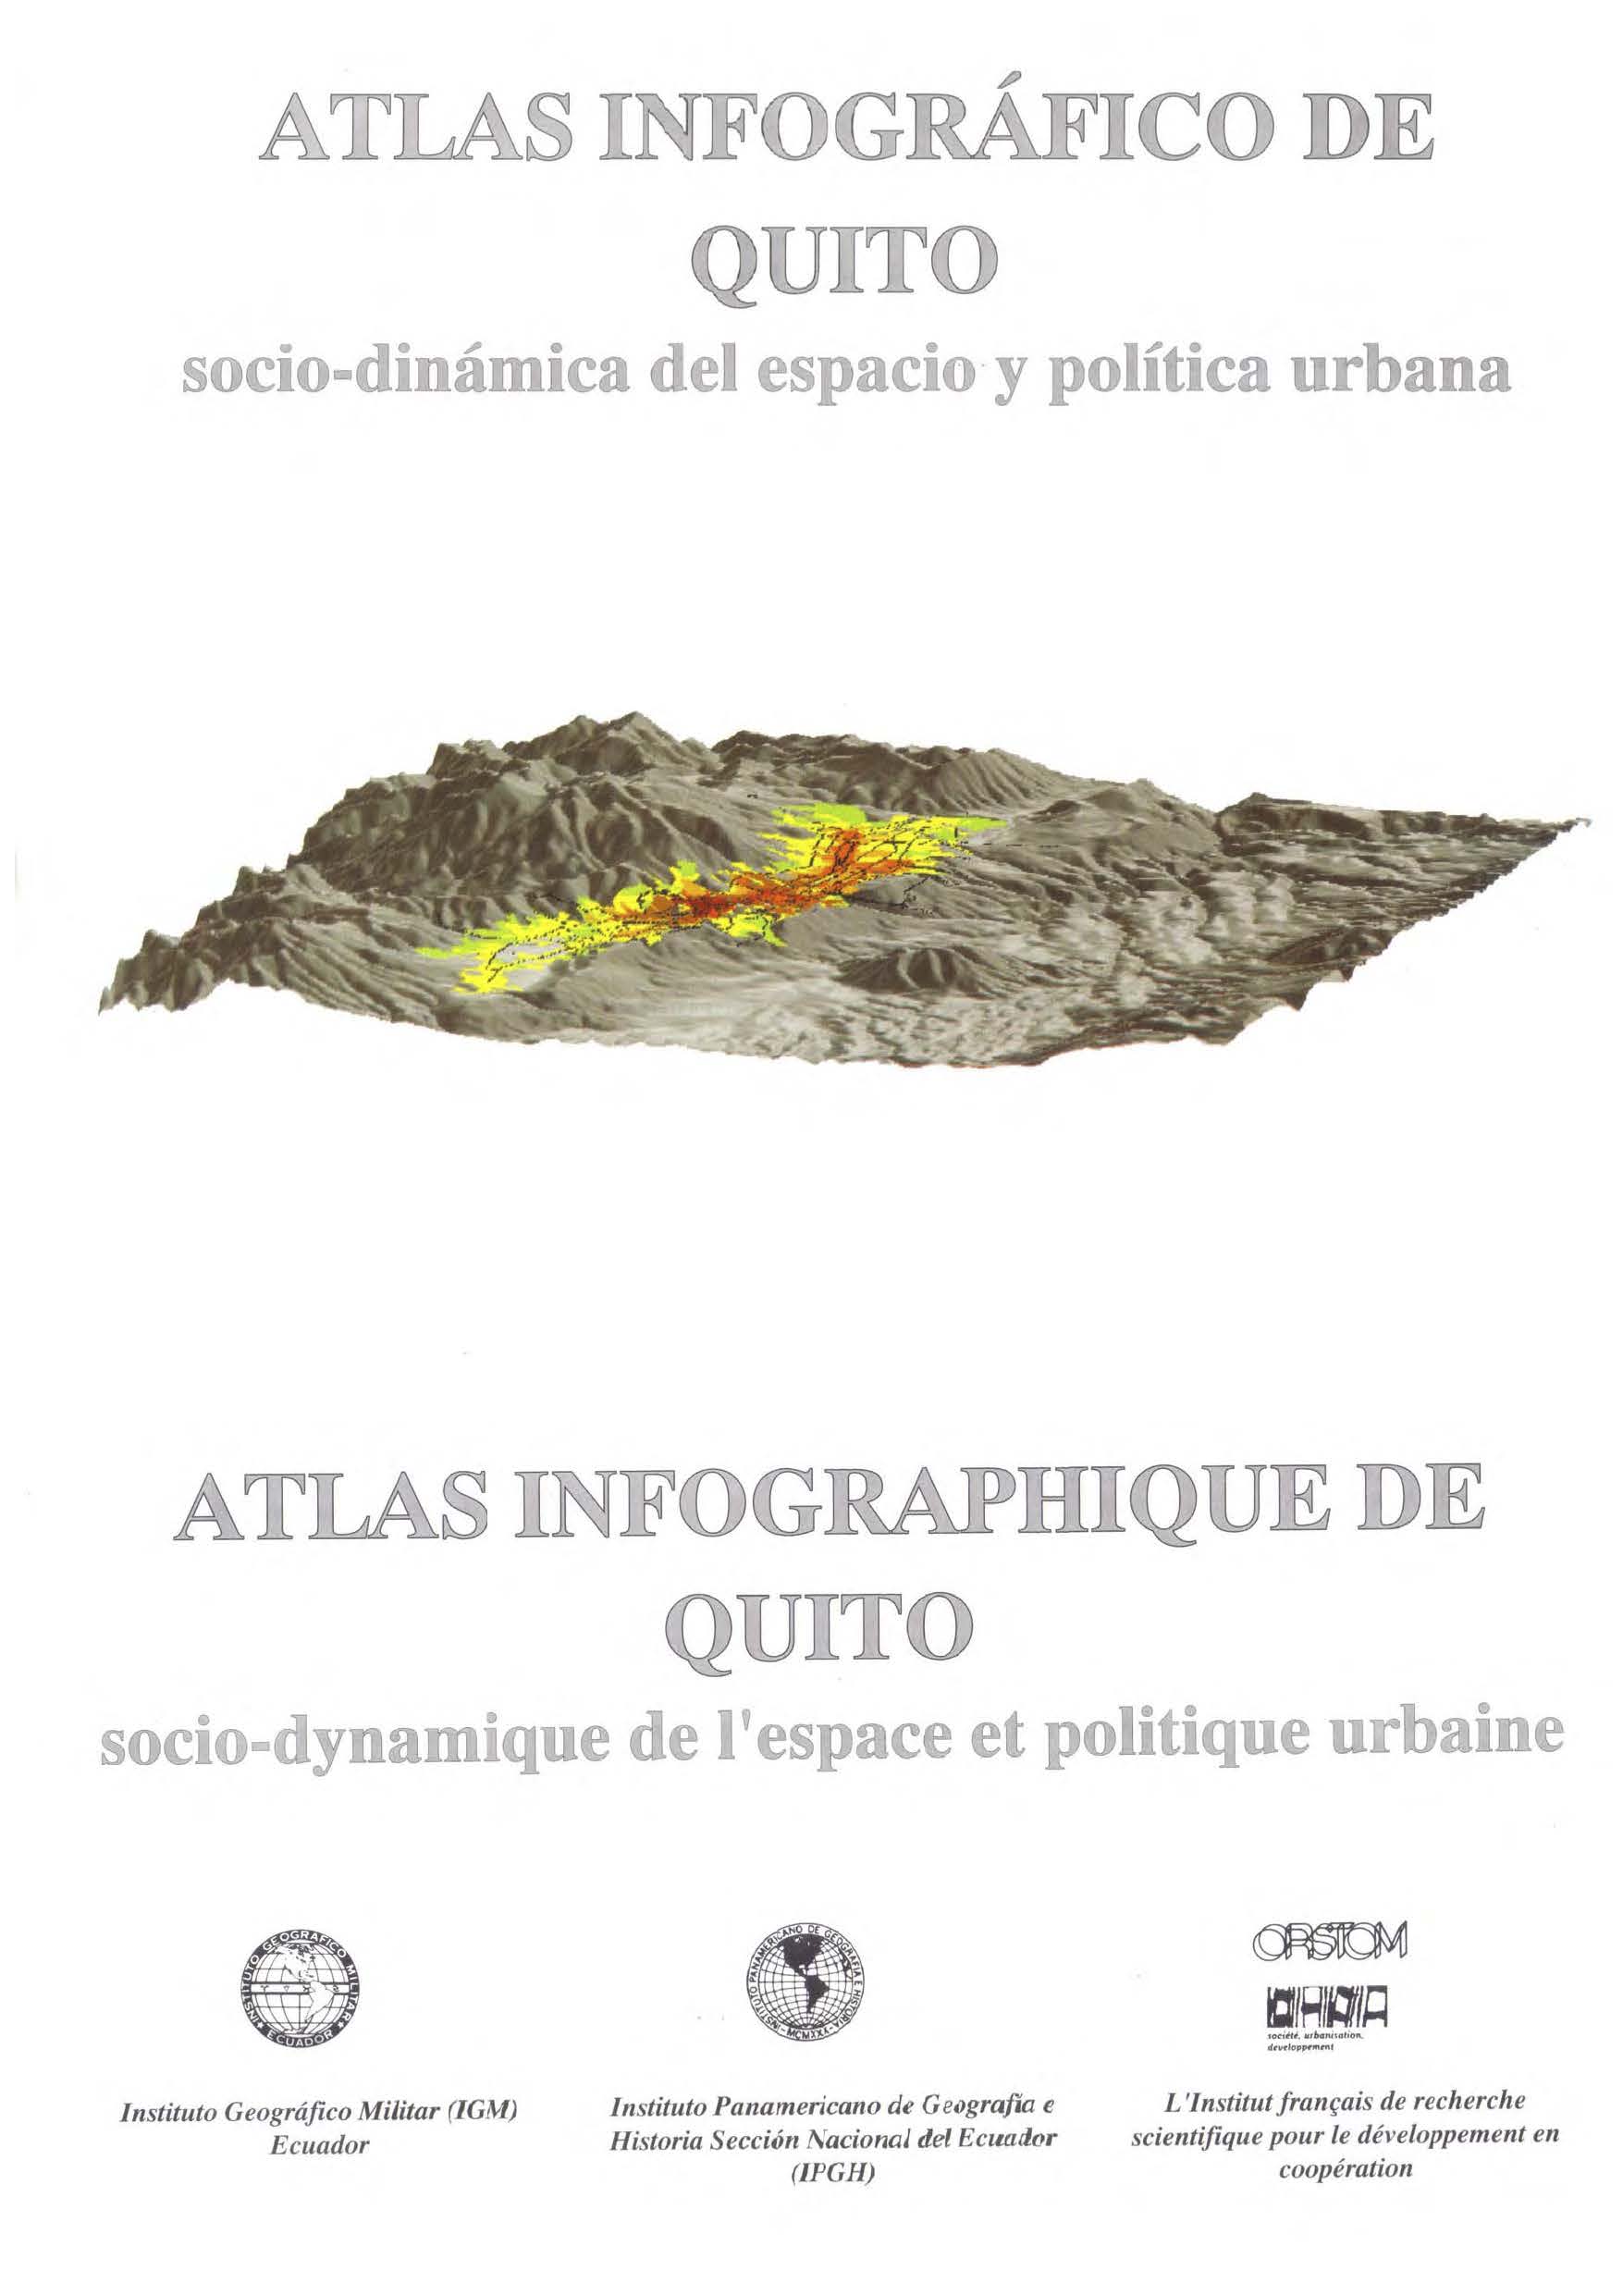 Atlas infográfico de Quito: socio-dinámica del espacio y política urbana